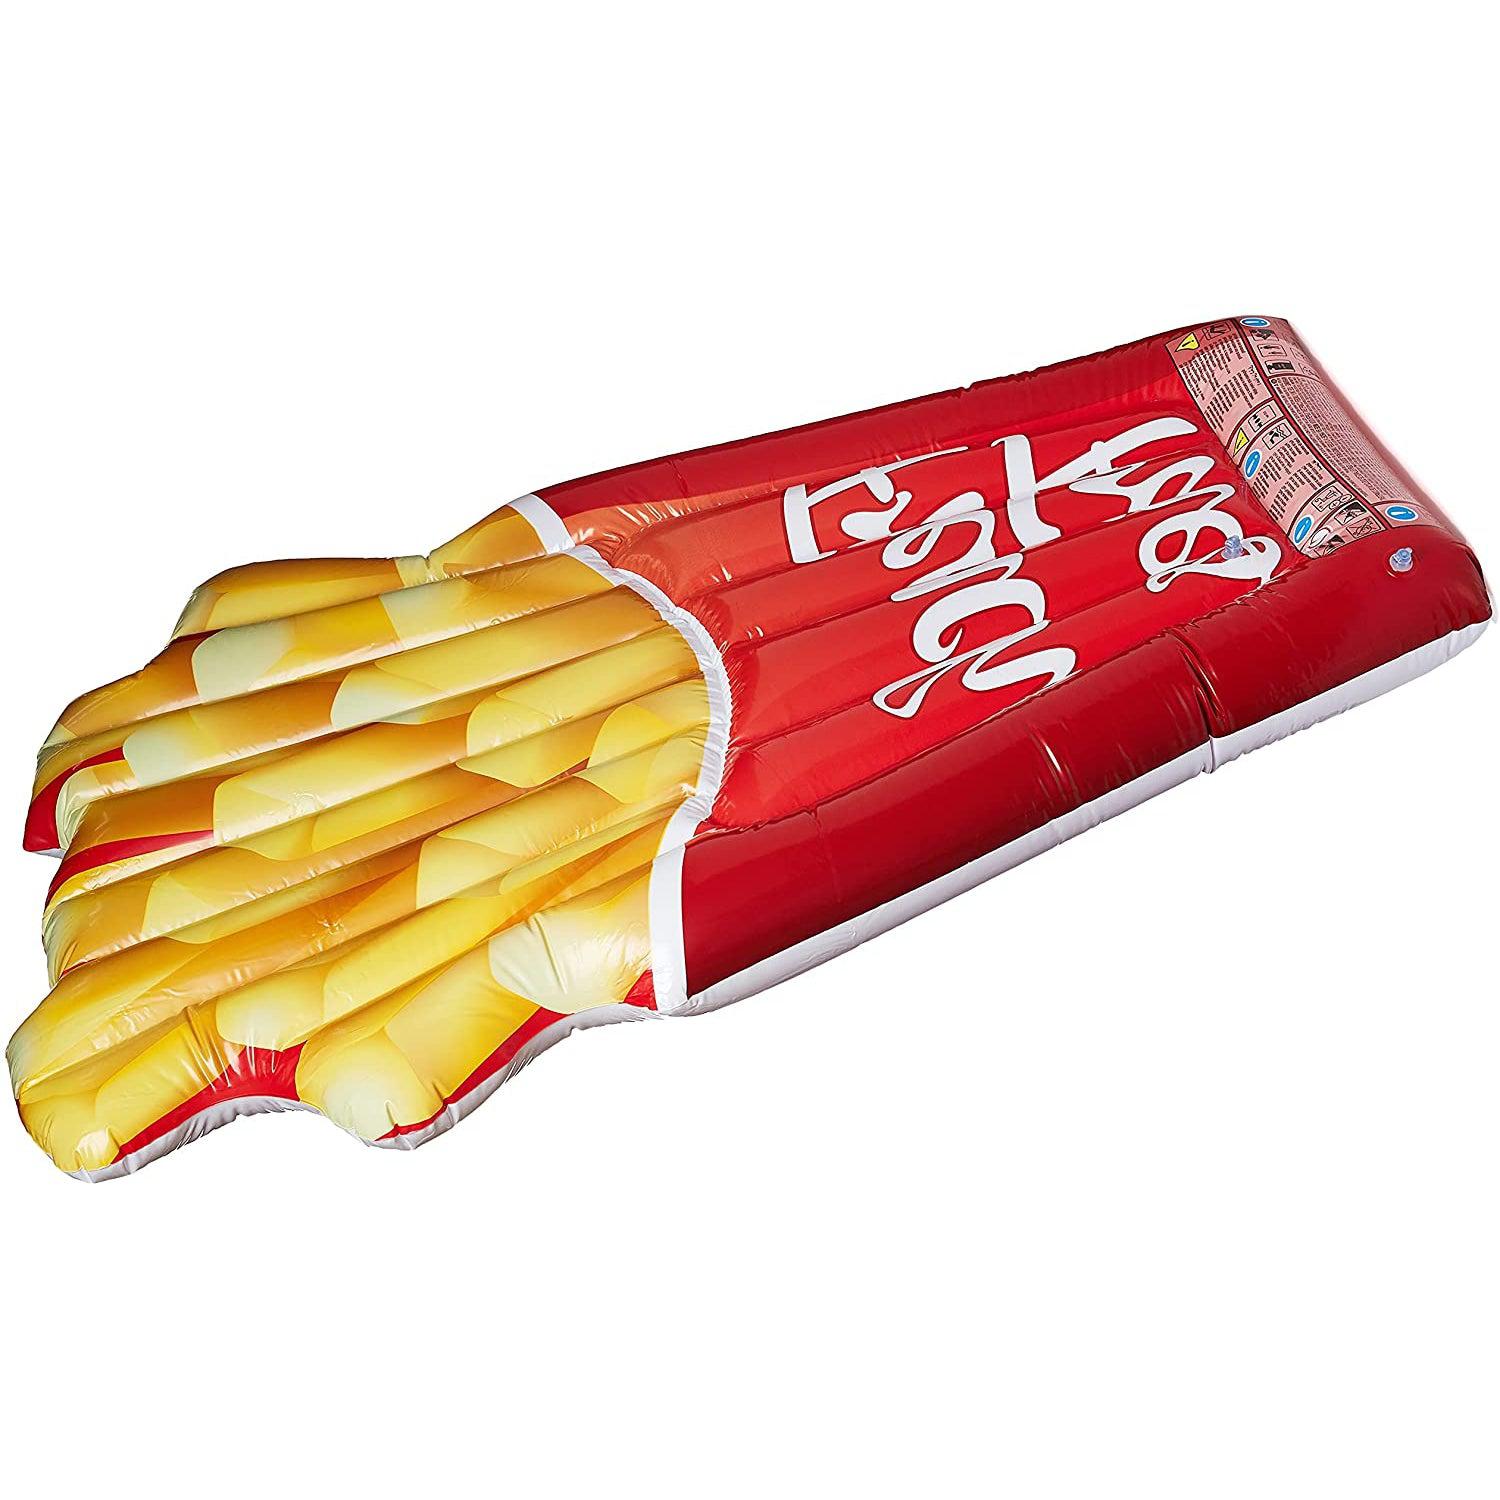 Materassino gonfiabile patatine fritte 175x132 cm Intex-Ecanshop